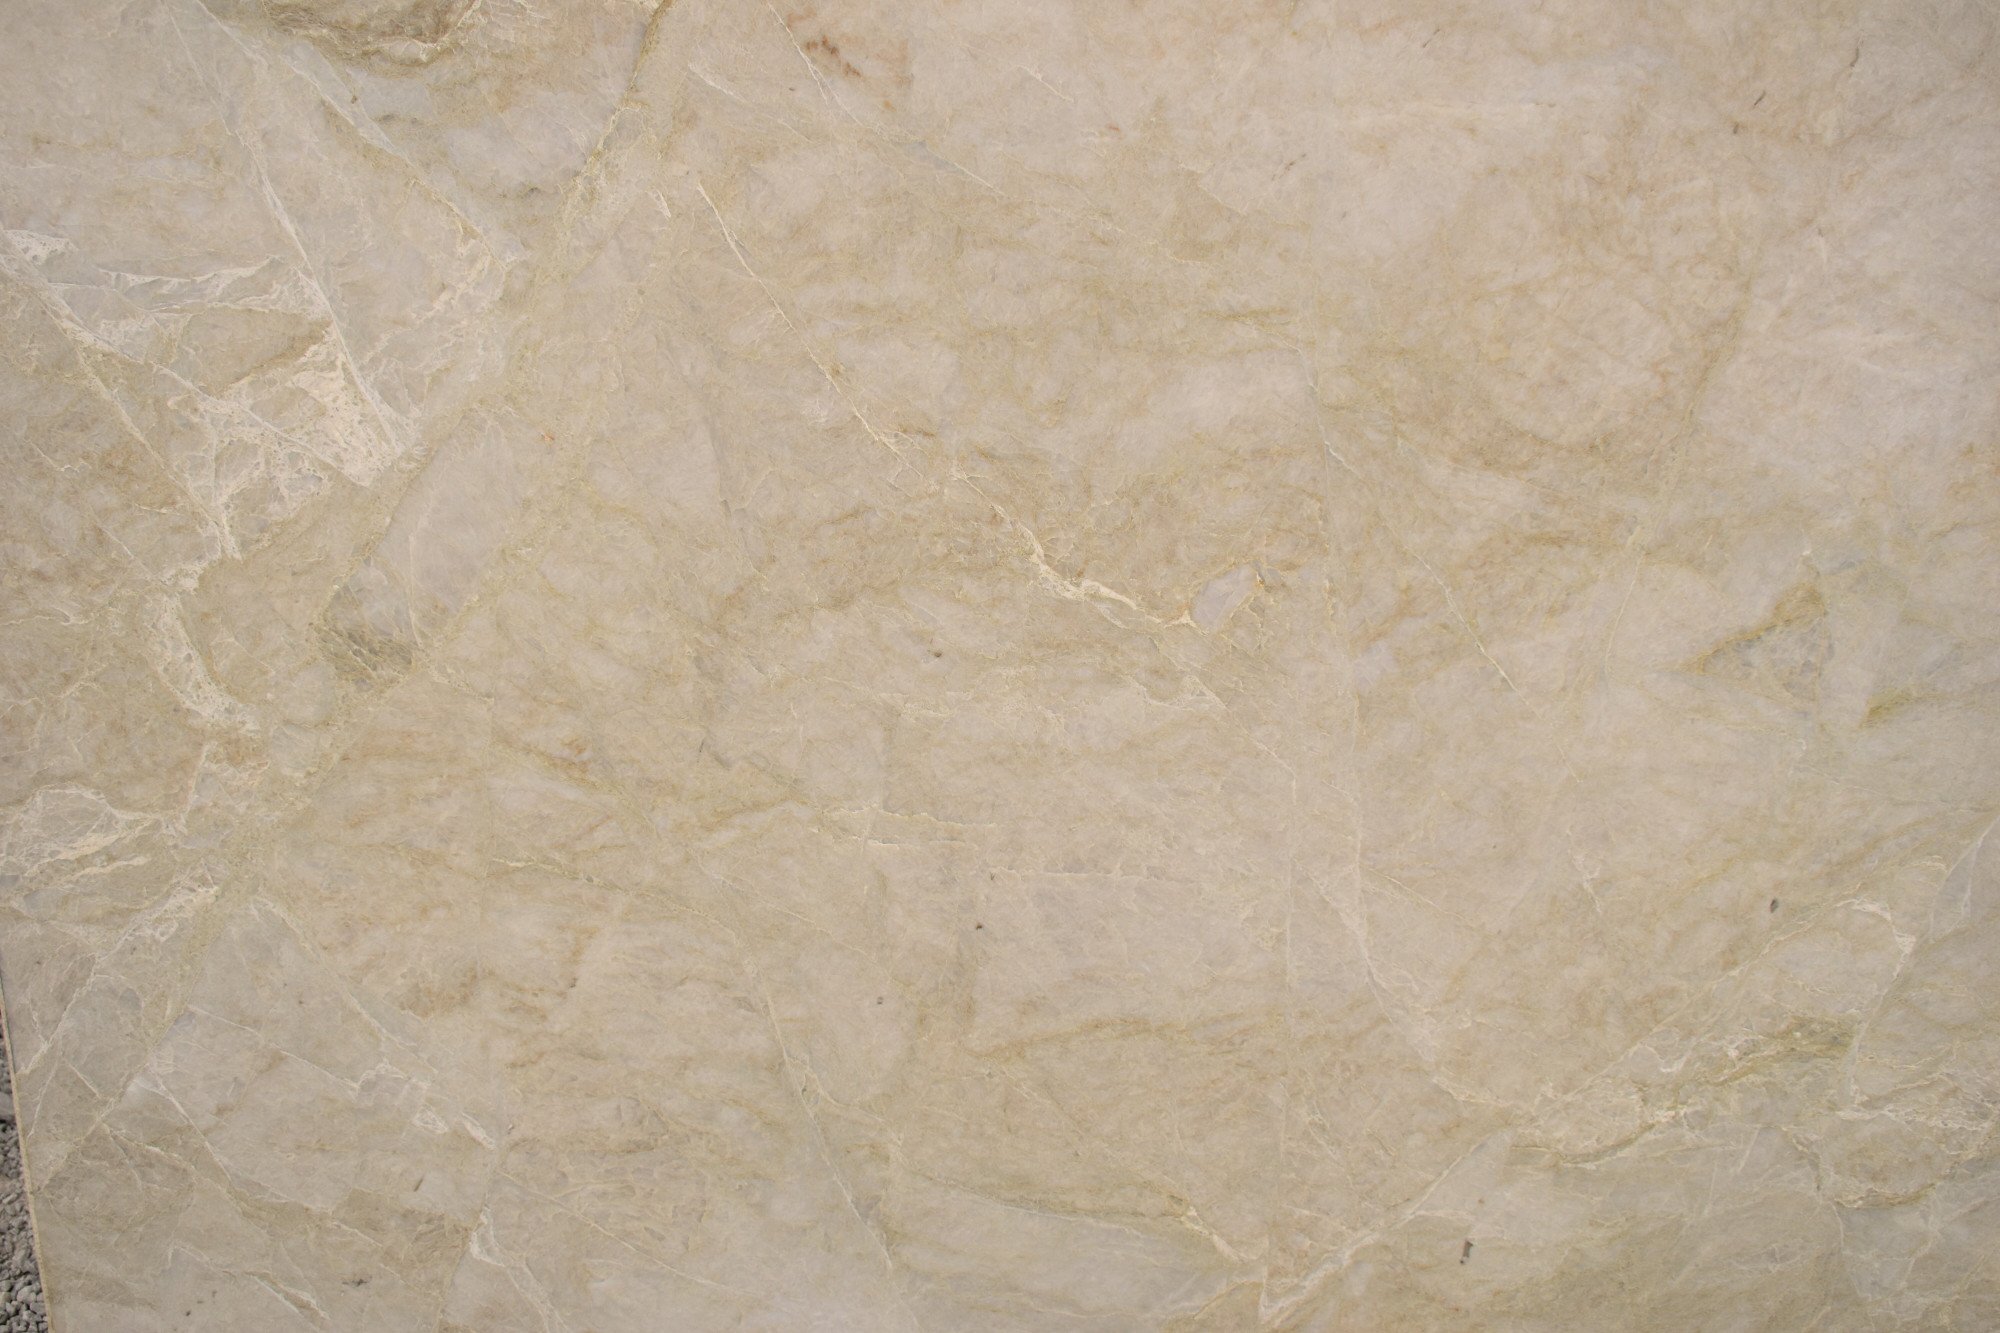 Perla Venata Leathered Cream Quartzite